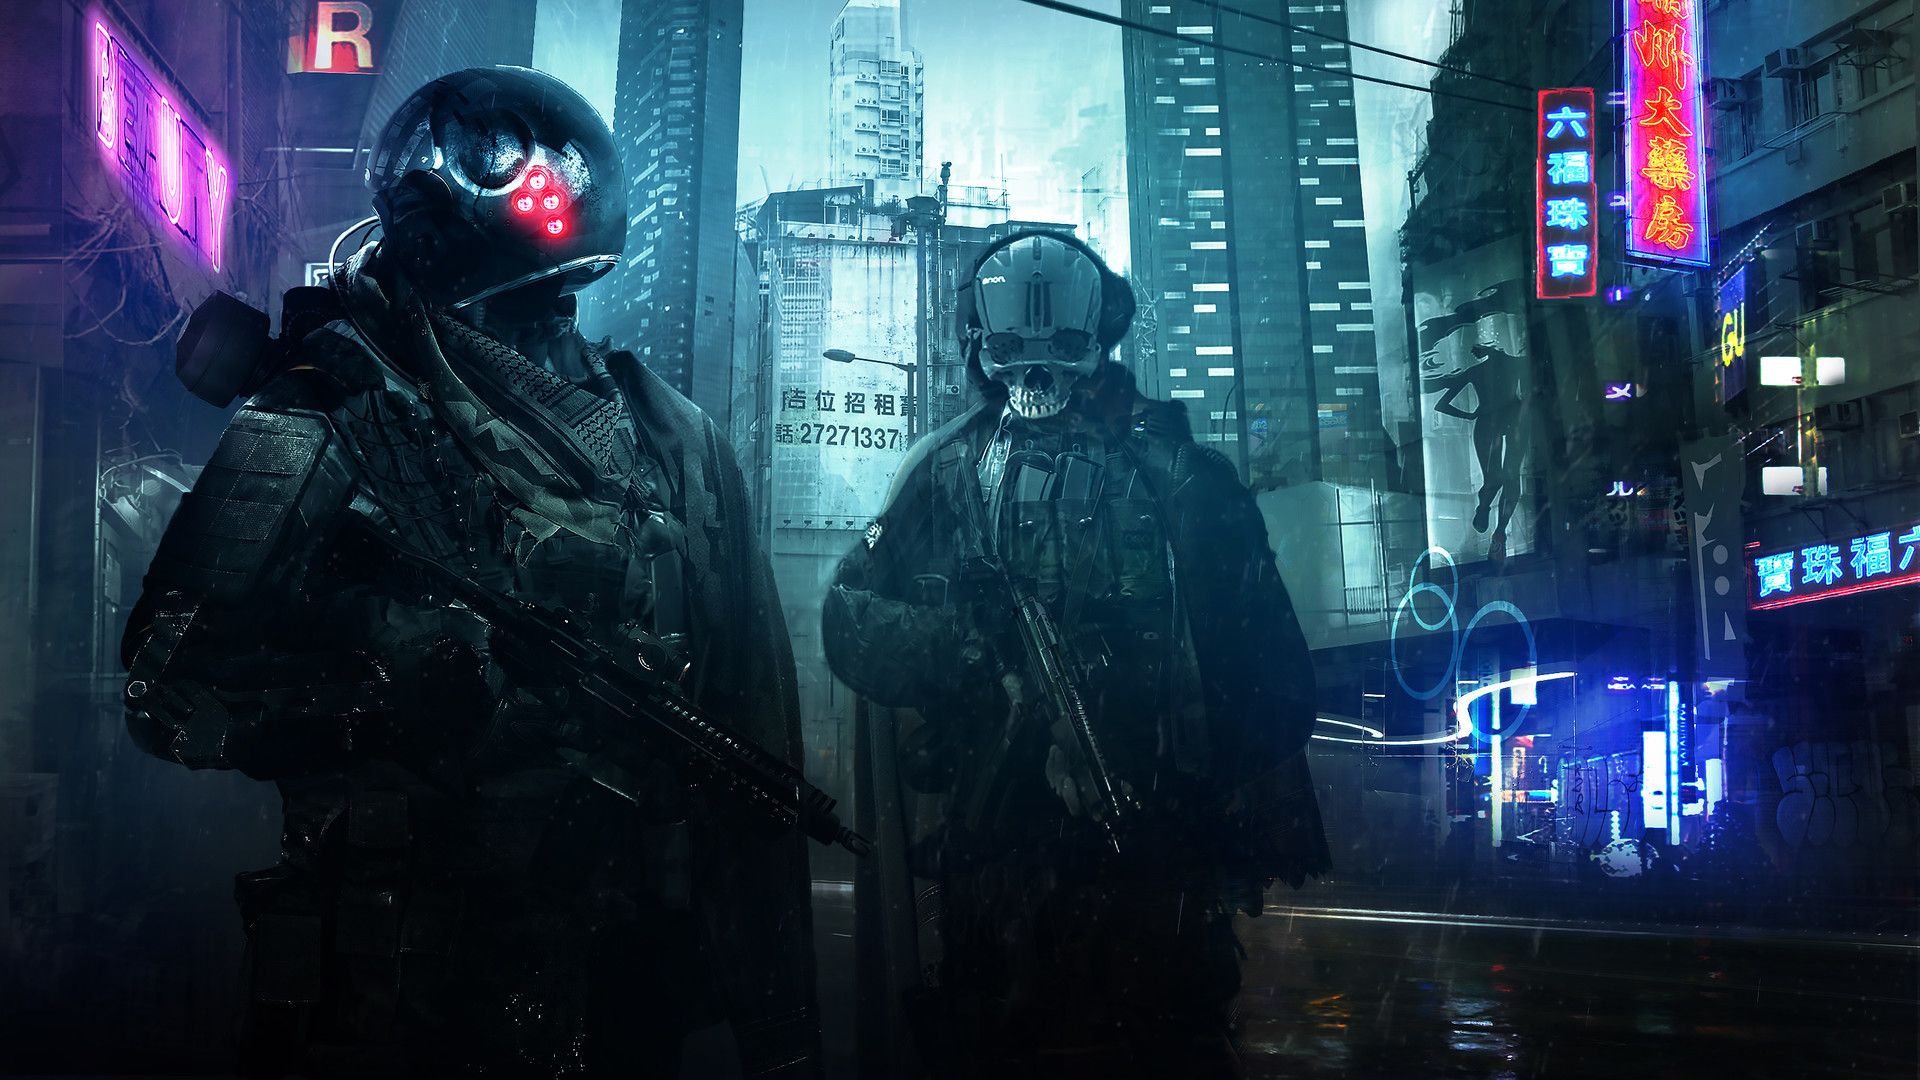 Cyberpunk HD Wallpaper Soldiers Sci Fi